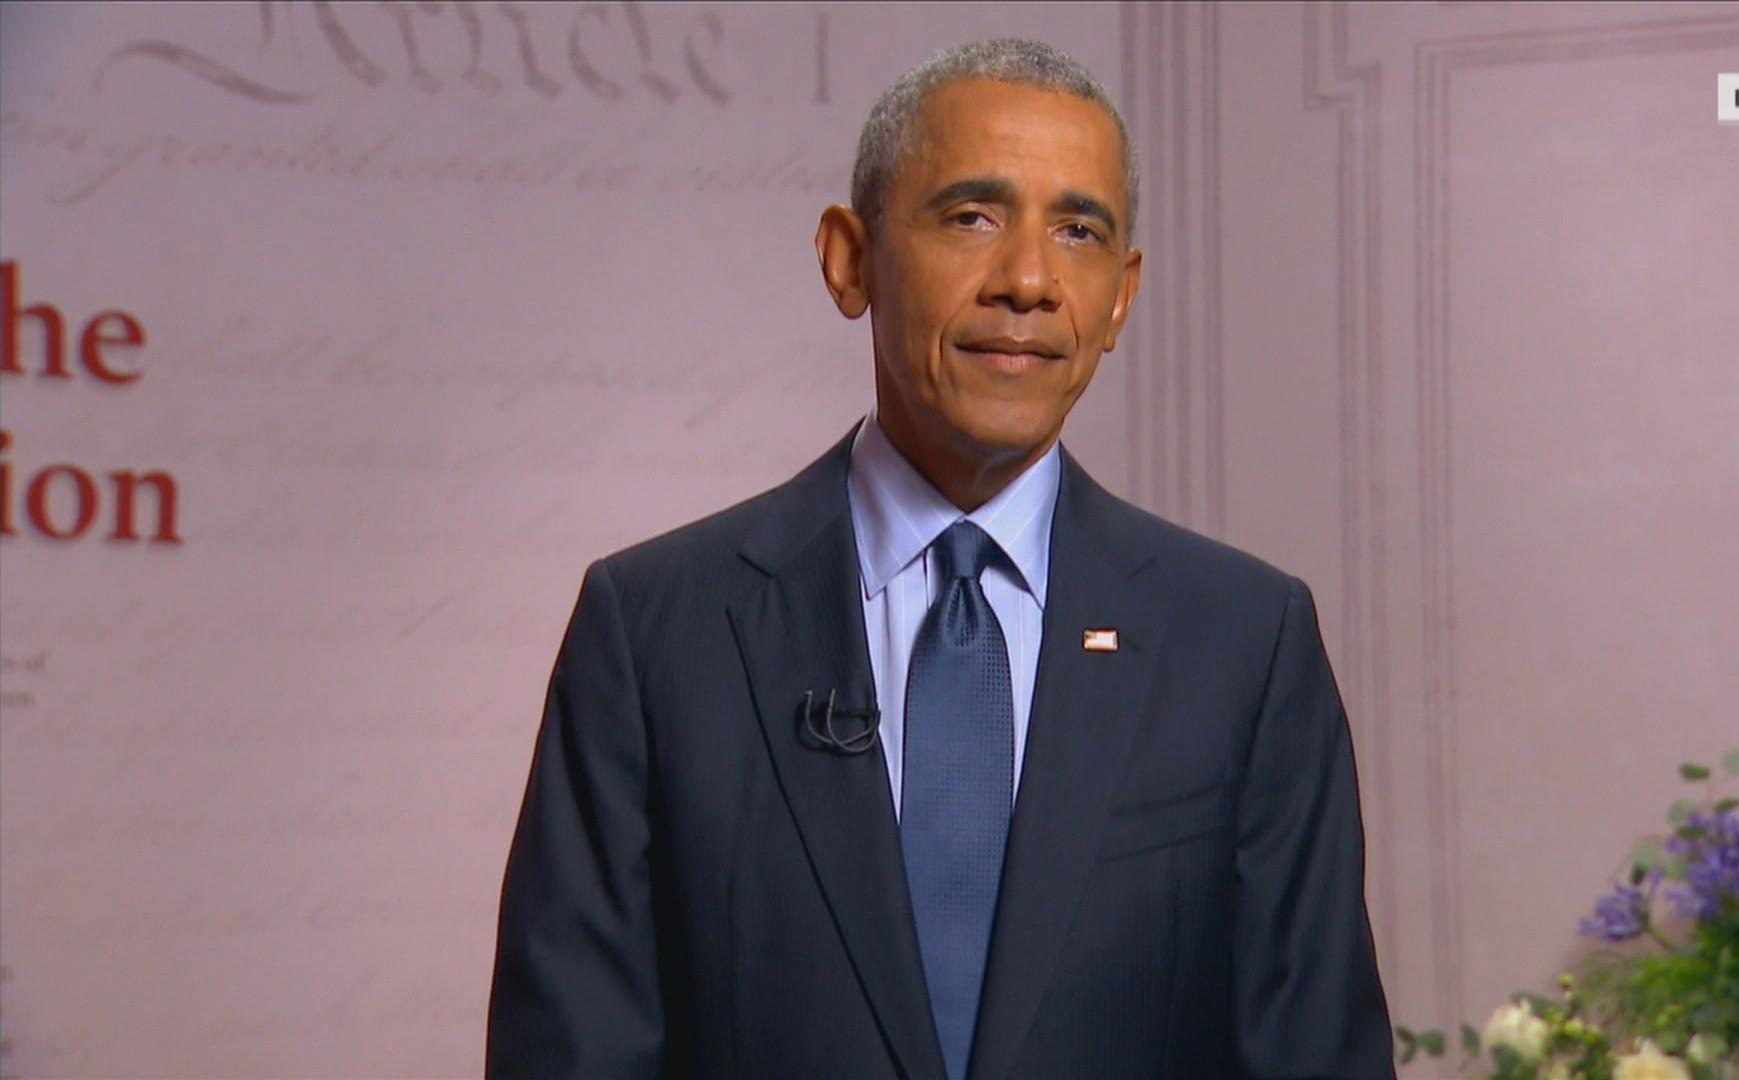 Điểm bất thường trong bài phát biểu của cựu TT Obama: Thông điệp 